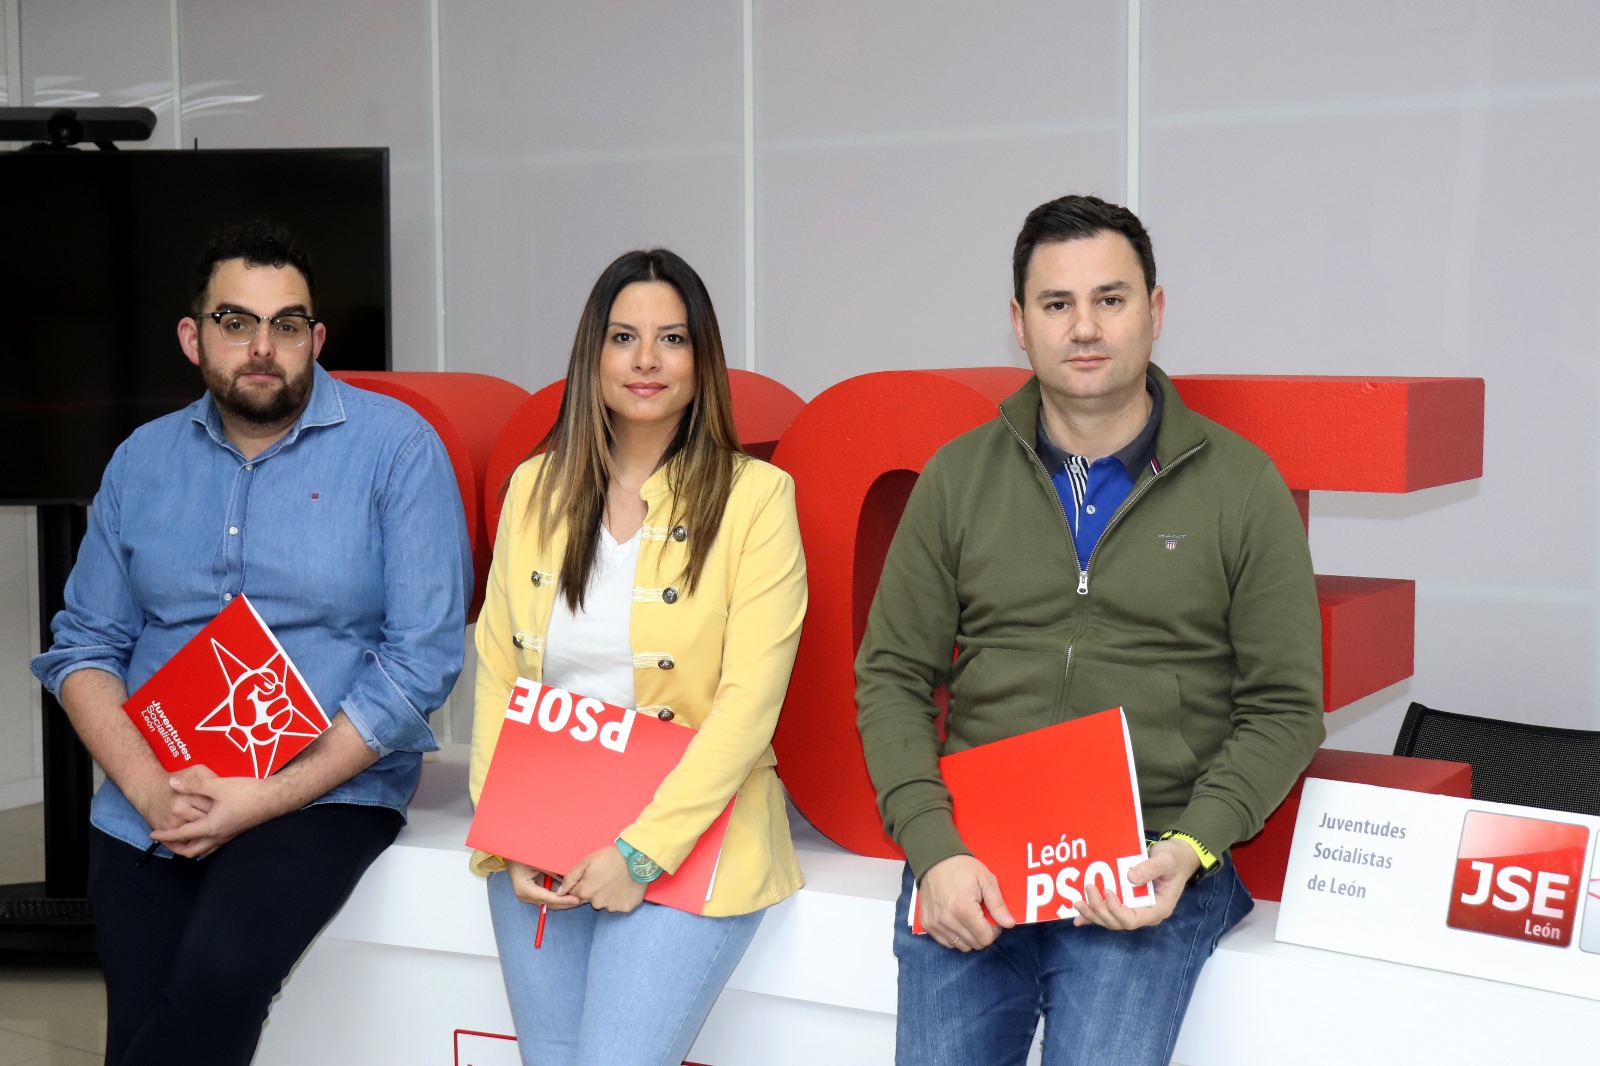 El PSOE y Juventudes Socialistas de León exigen a la Junta tomar ejemplo del Gobierno de Sánchez en cuanto a sus políticas de juventud